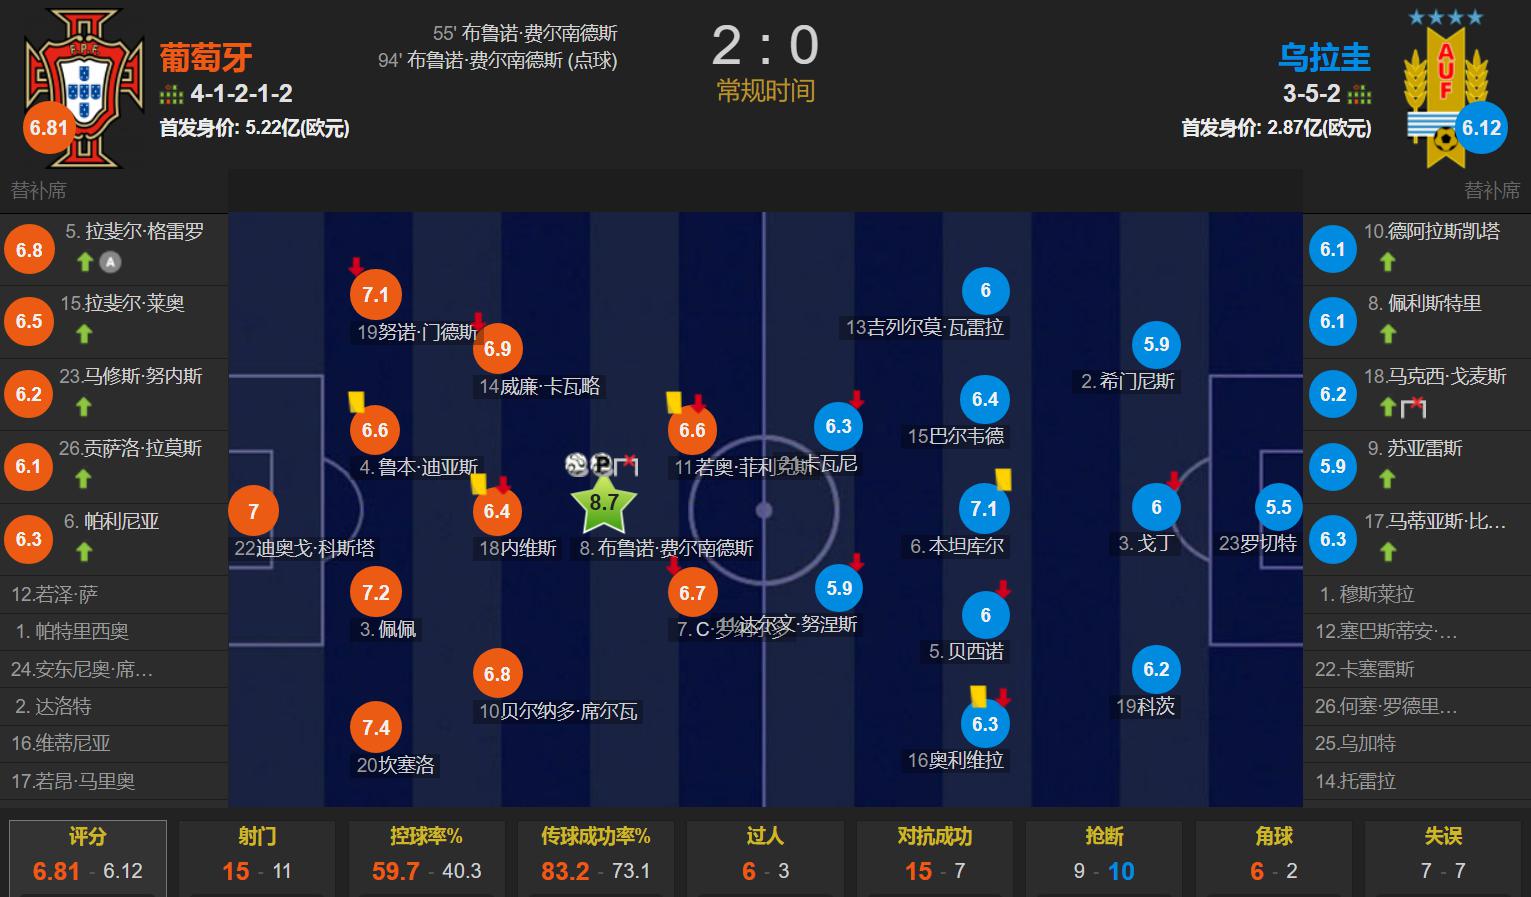 曼联真核连场发威 B费双响+中柱 莱奥懒散 葡萄牙2-0乌拉圭晋级(2)